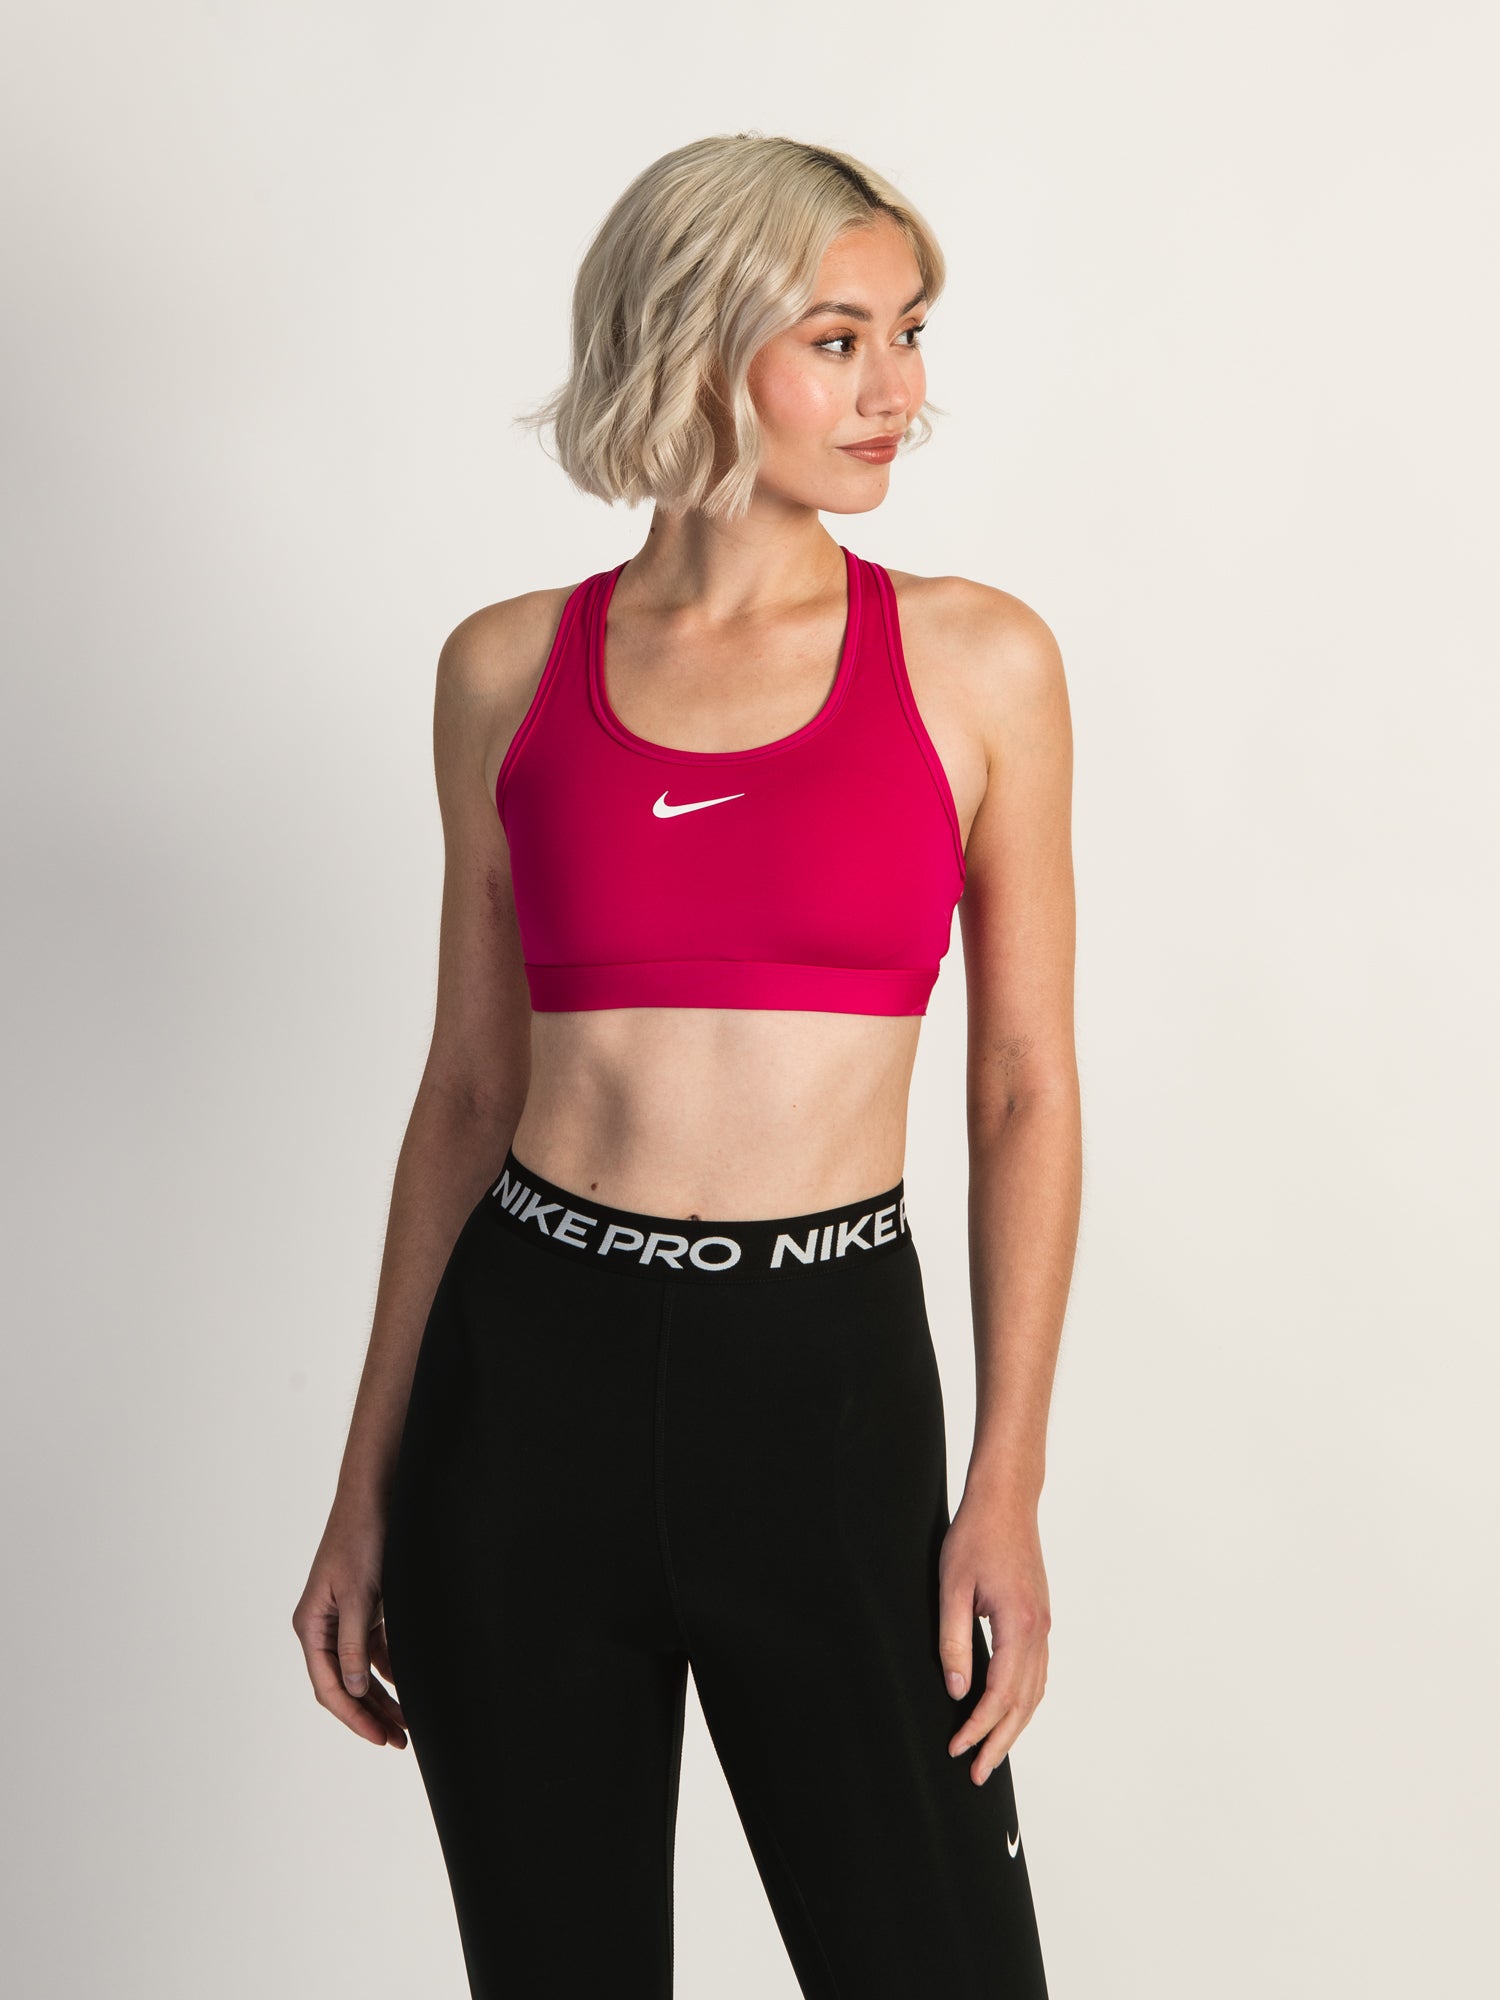 Fit Light Support Women's Sports Bra Pink DX6817 - 615 - Air Max 270 131 - Nike  DRI